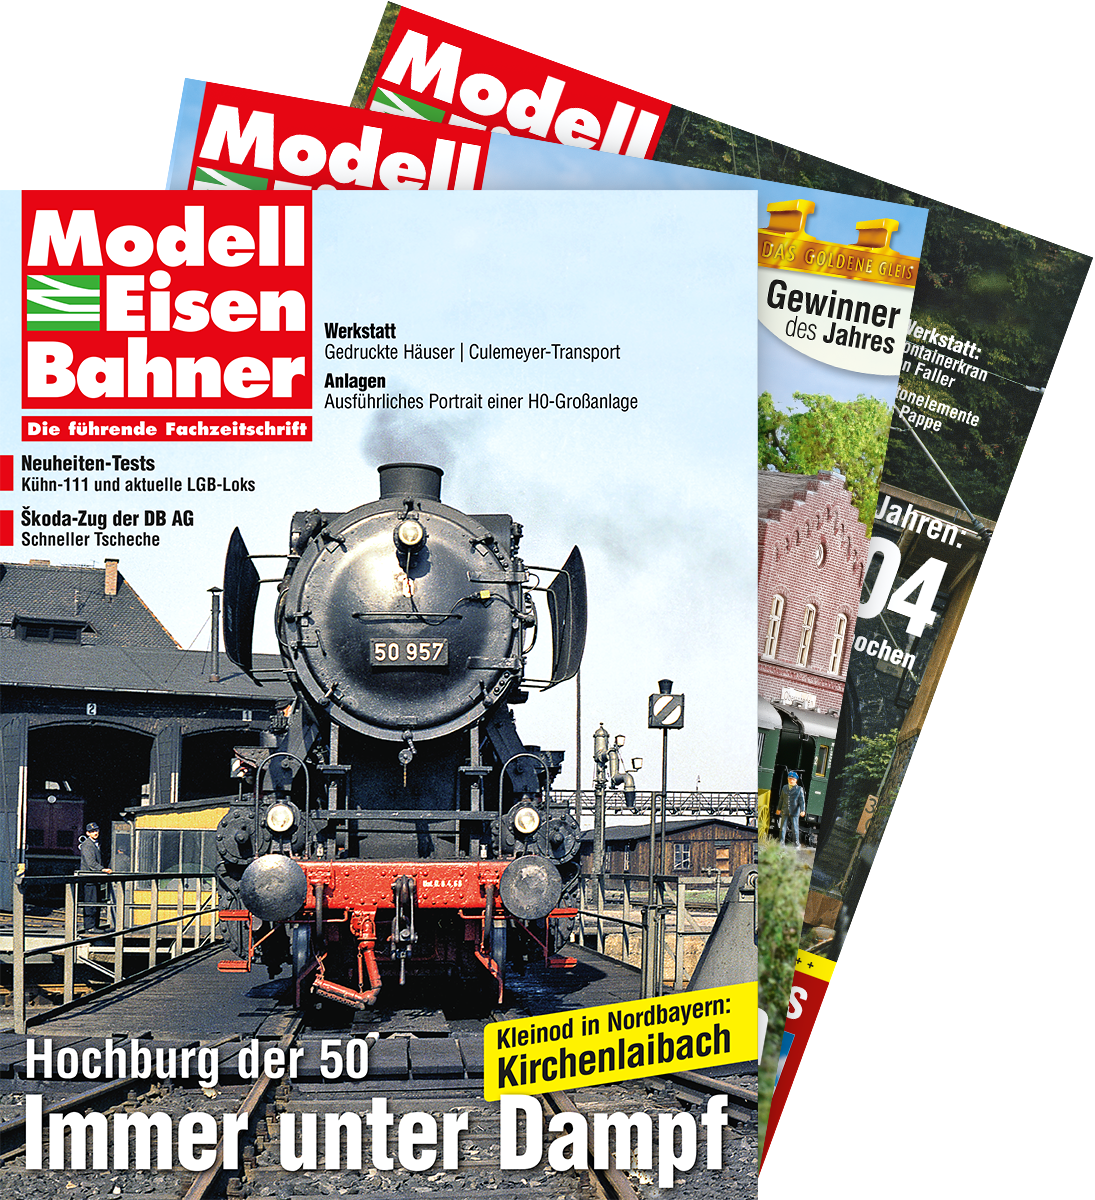 www.modelleisenbahner.de